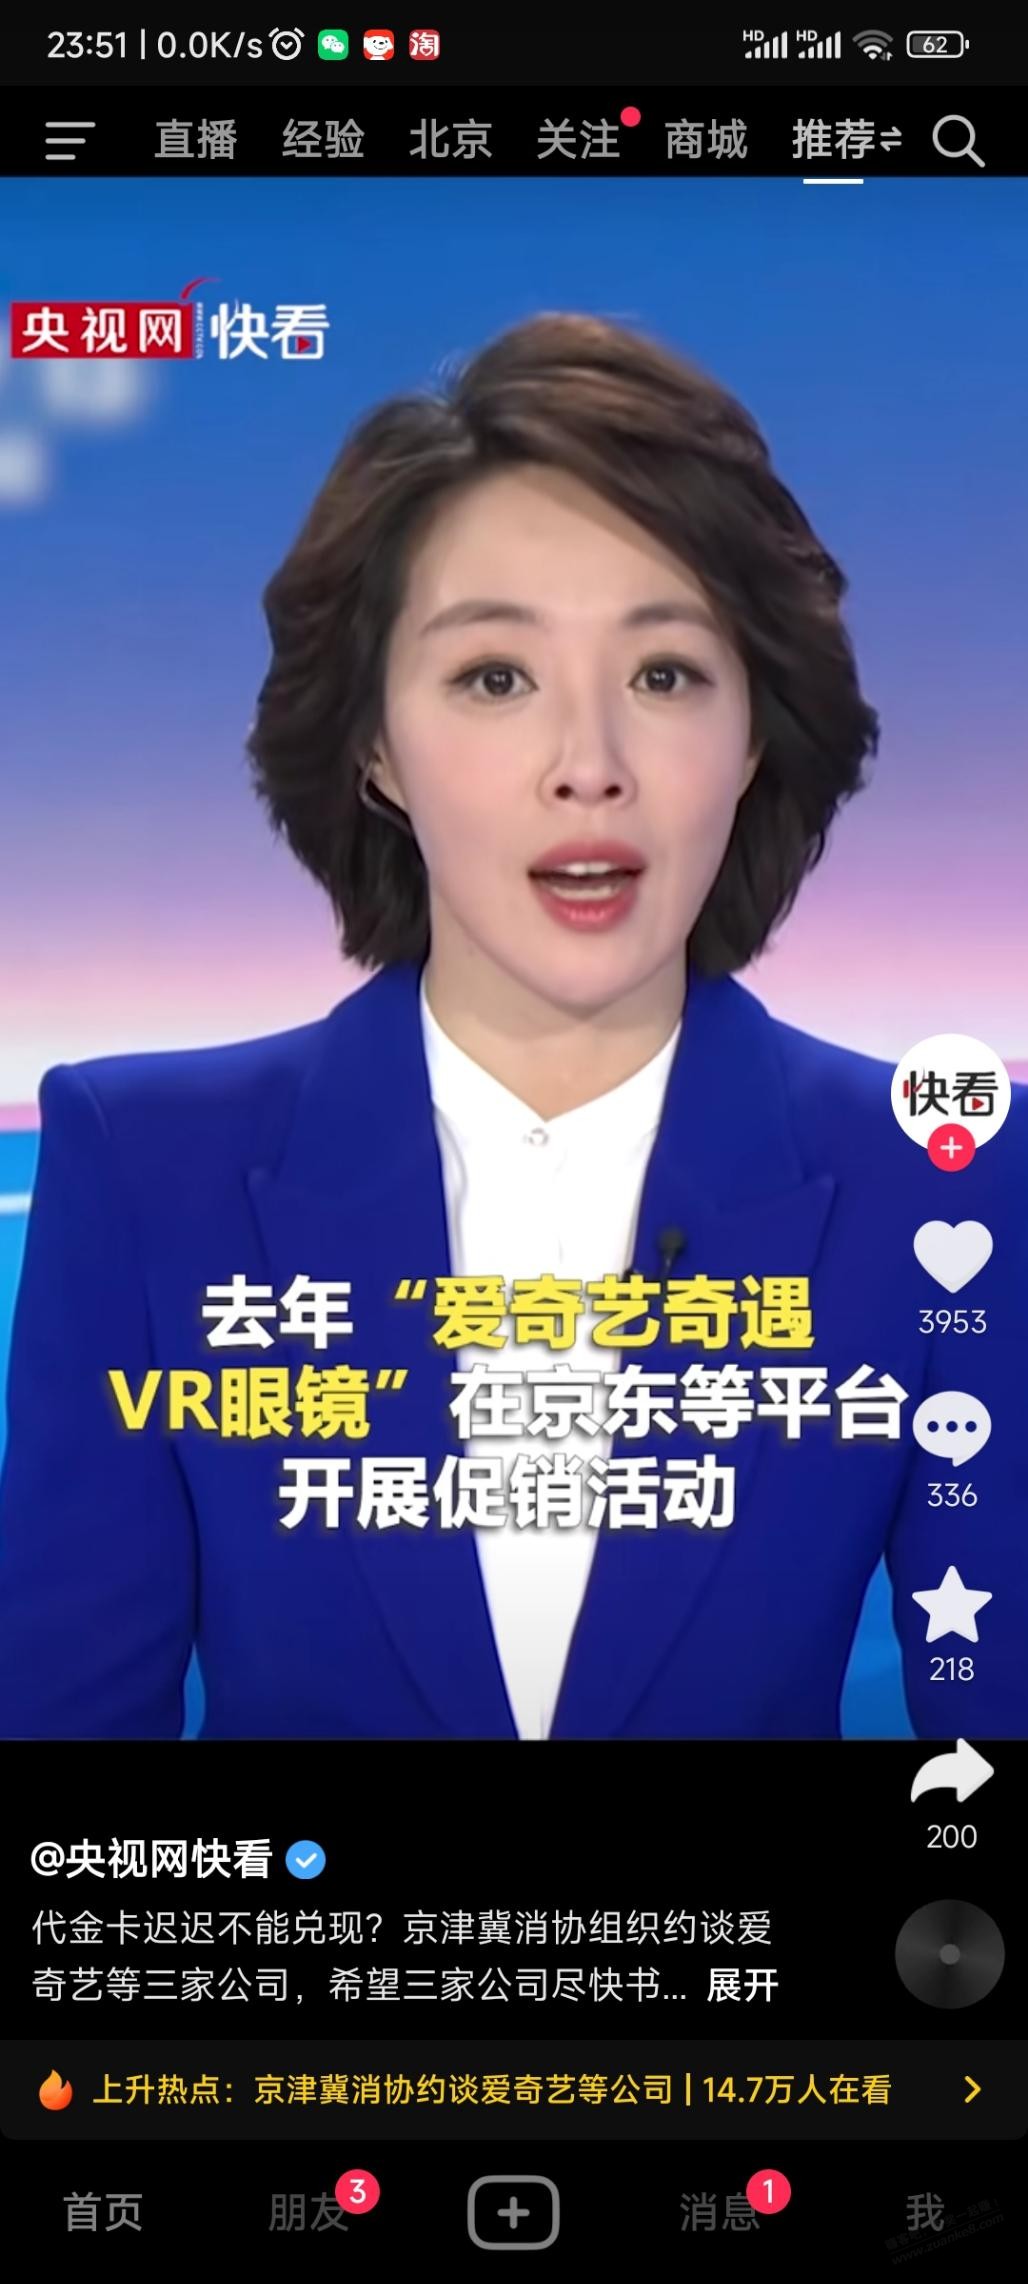 央视报道爱奇艺VR眼镜不反卡的事了-惠小助(52huixz.com)